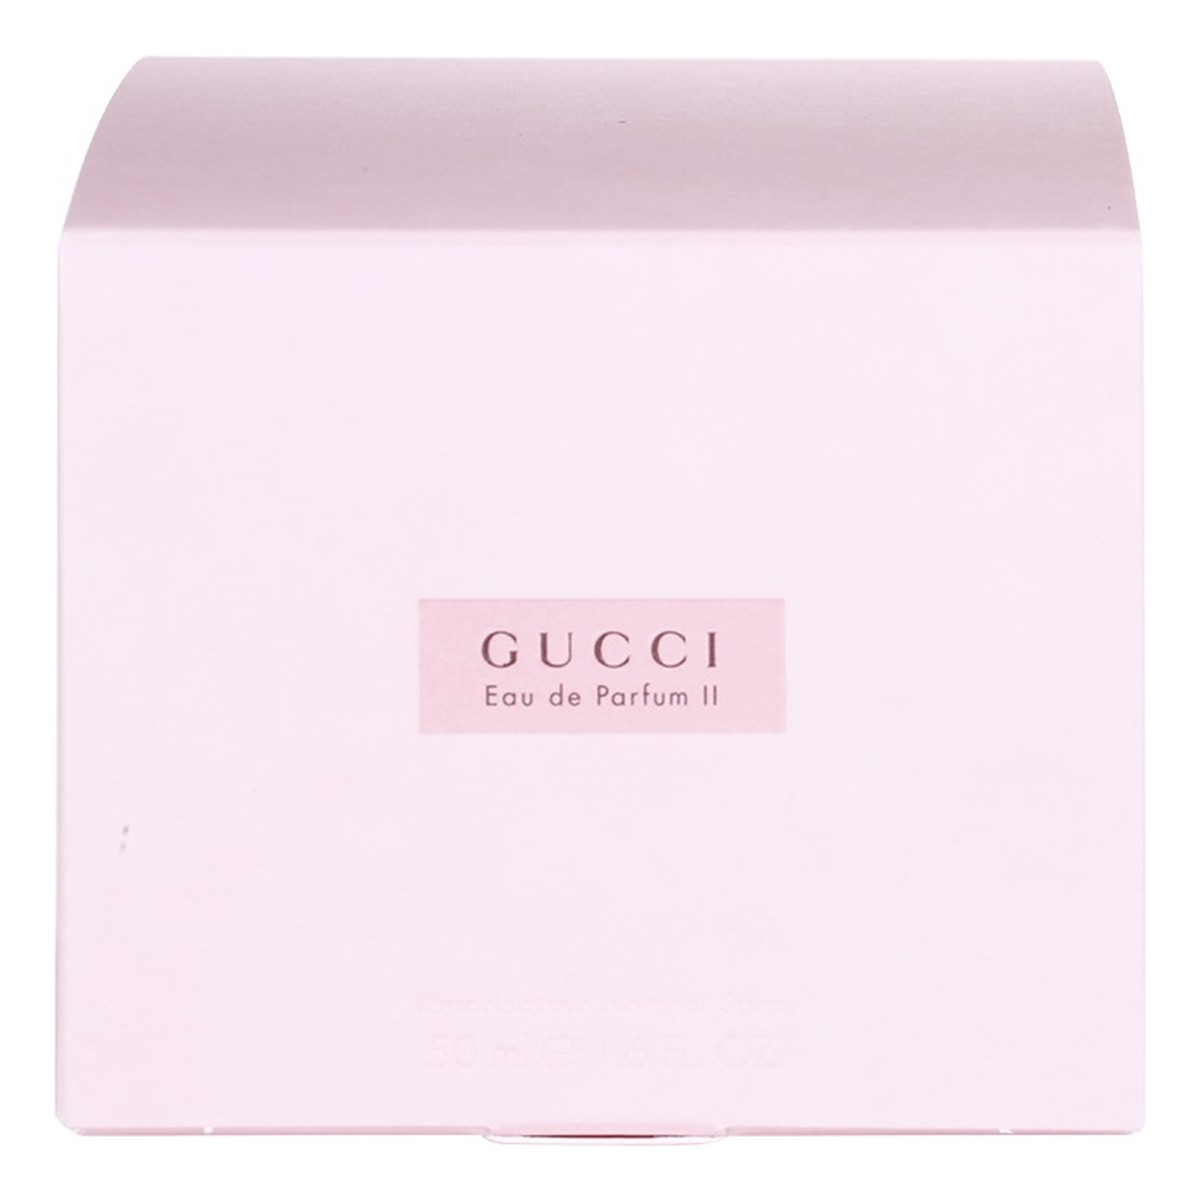 Gucci Eau de Parfum II Woda perfumowana dla kobiet 50ml